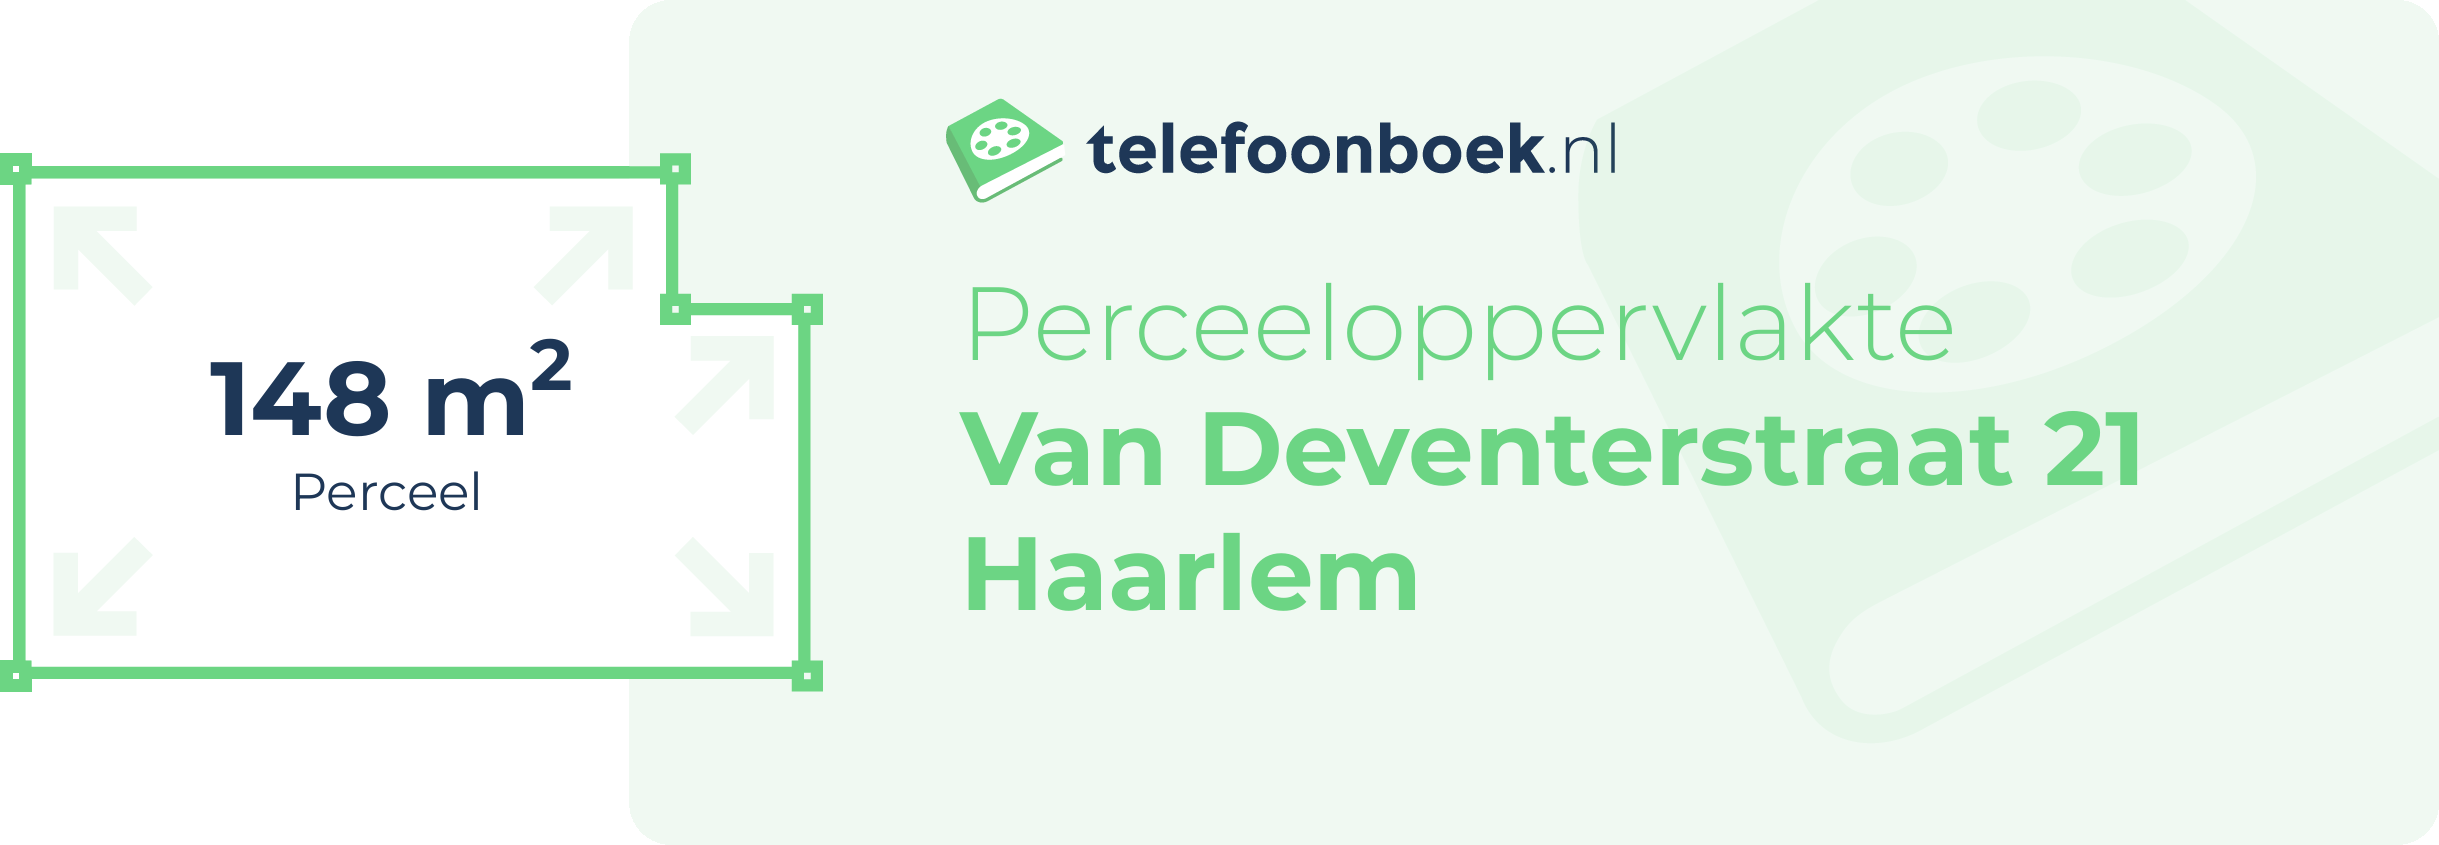 Perceeloppervlakte Van Deventerstraat 21 Haarlem